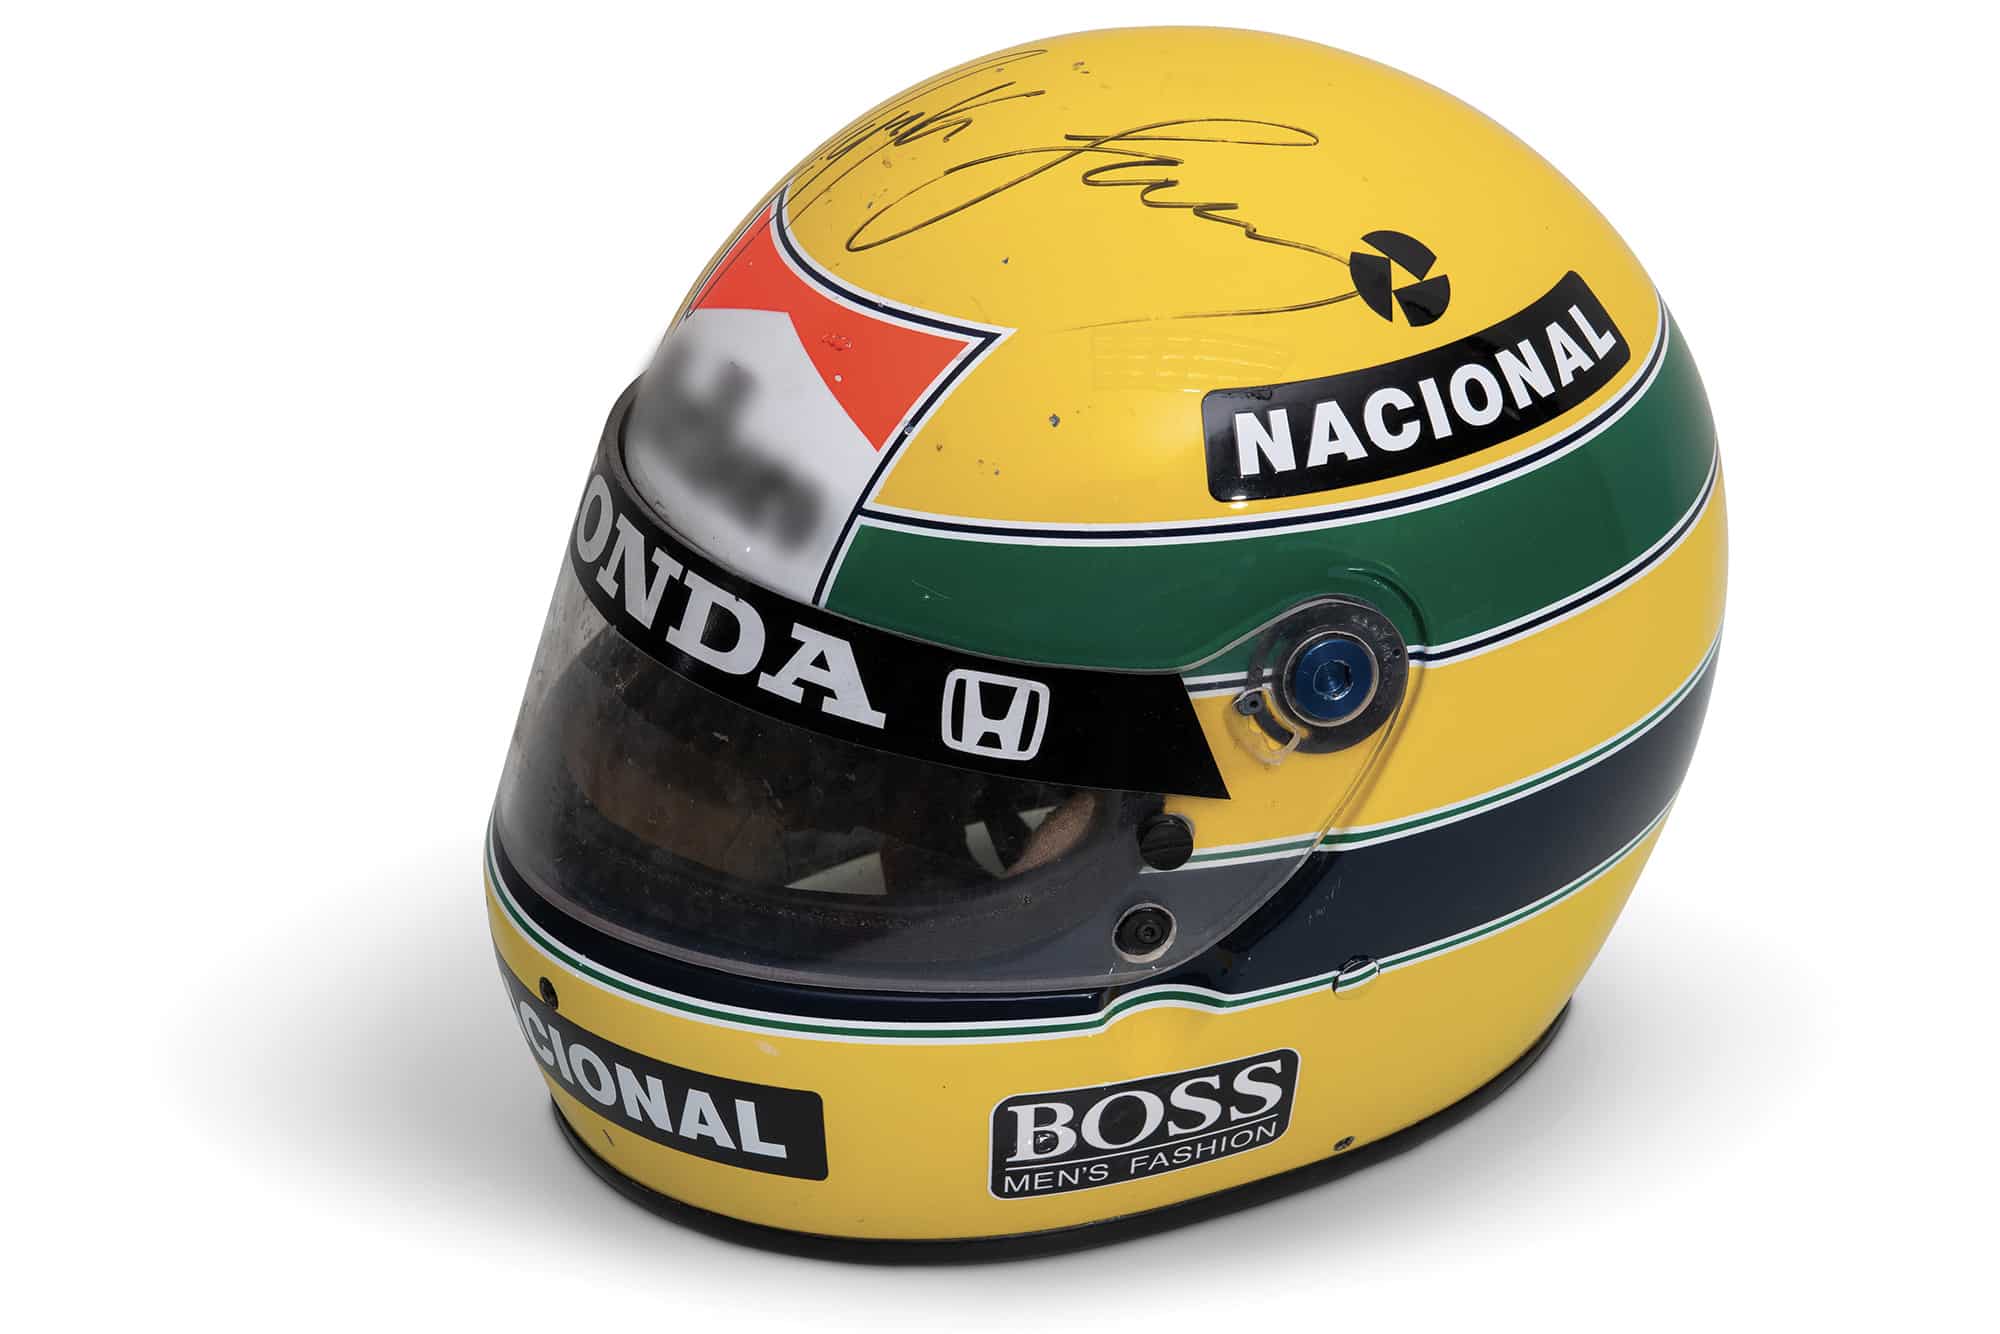 1988 Ayrton Senna helmet sold for $102,000 auction in December 2019